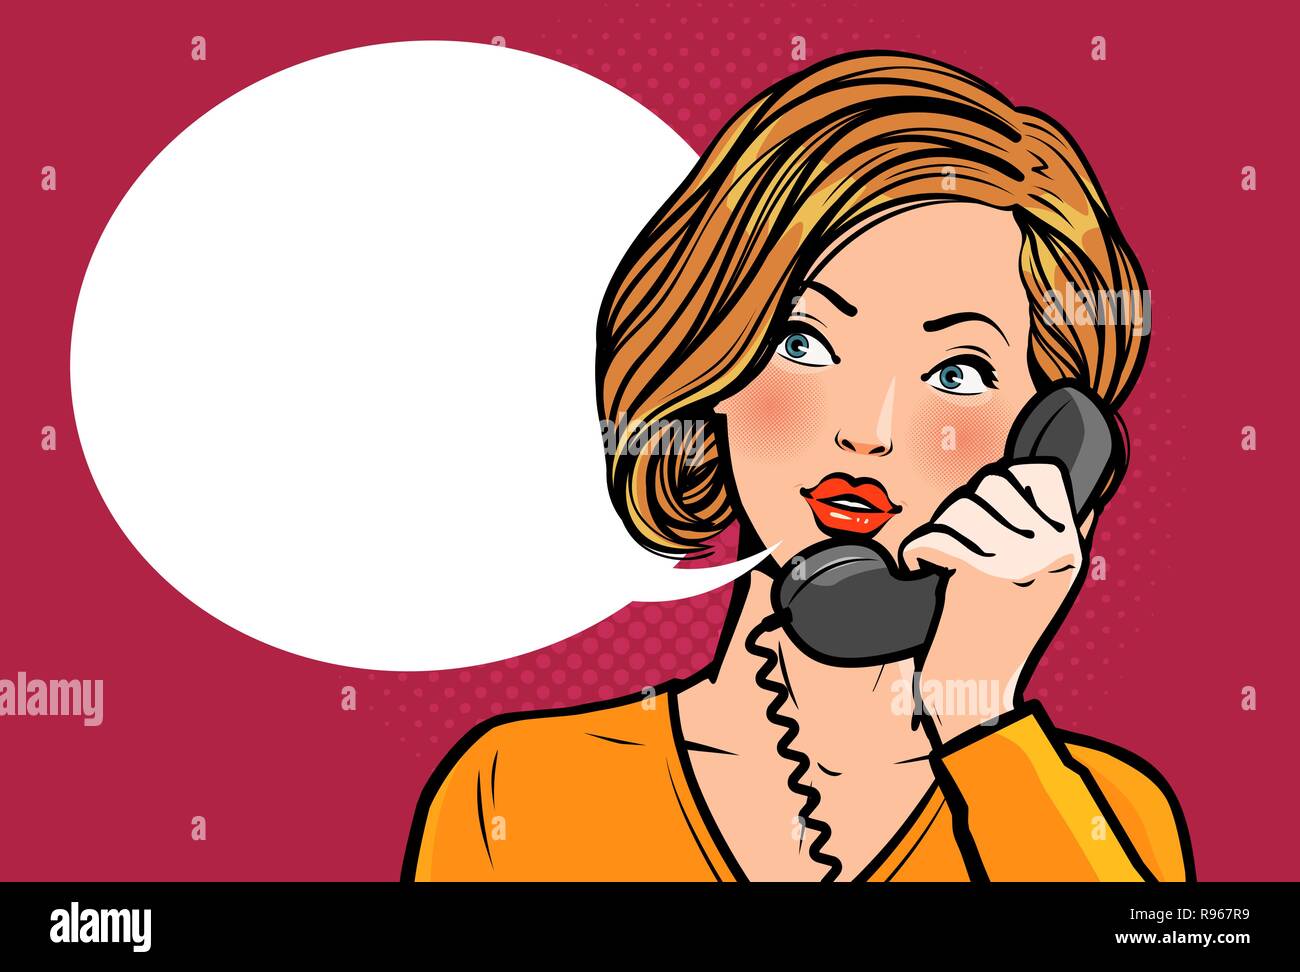 Mädchen oder Junge Frau am Telefon zu sprechen. Das Gespräch. Vector Illustration Stock Vektor